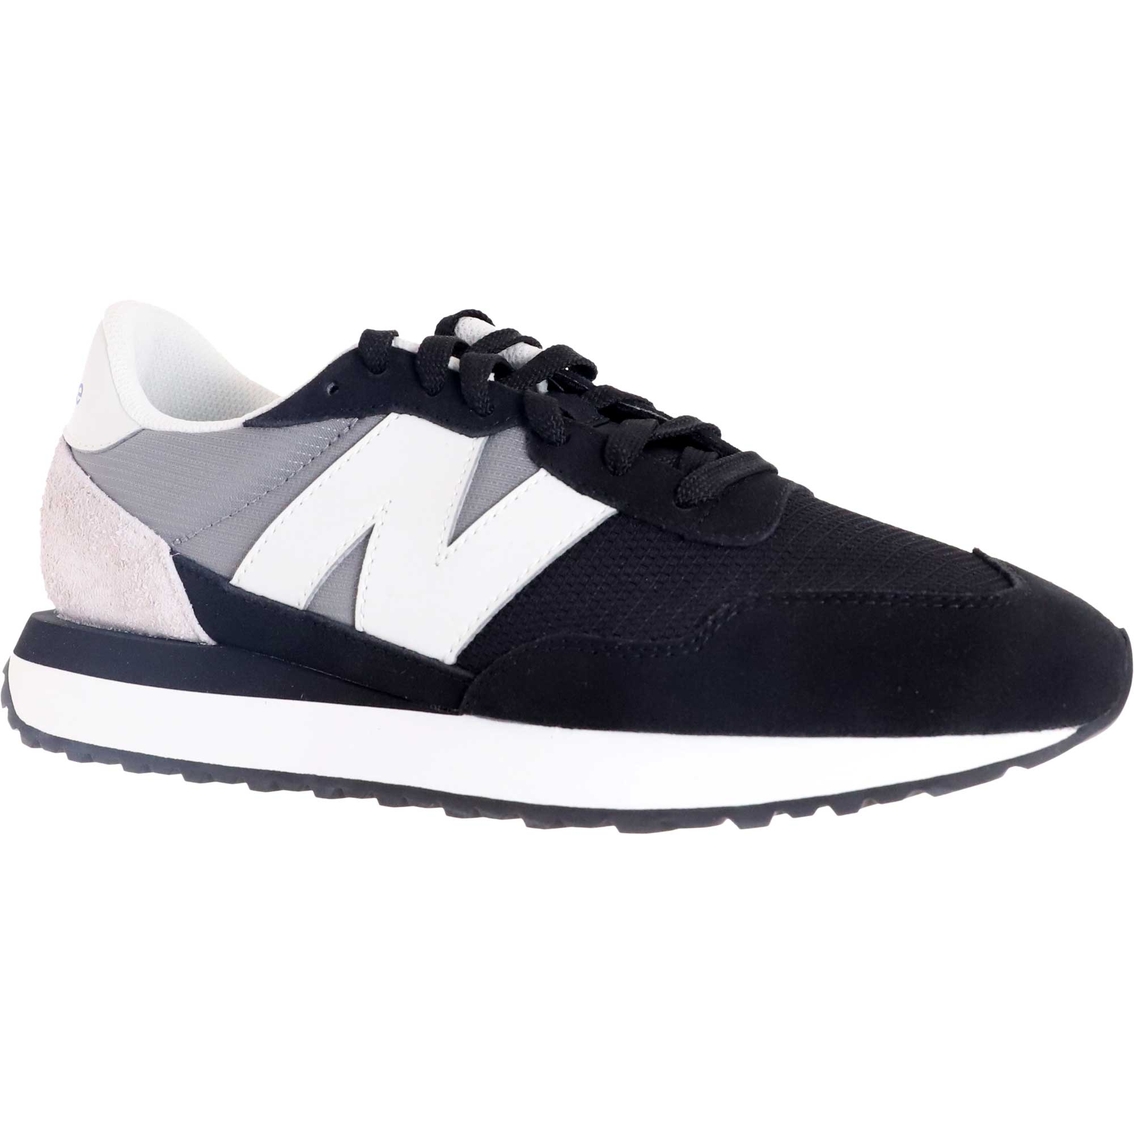 New Balance Men's 237 Sneakers | Men's Athletic Shoes | Shoes | Shop ...